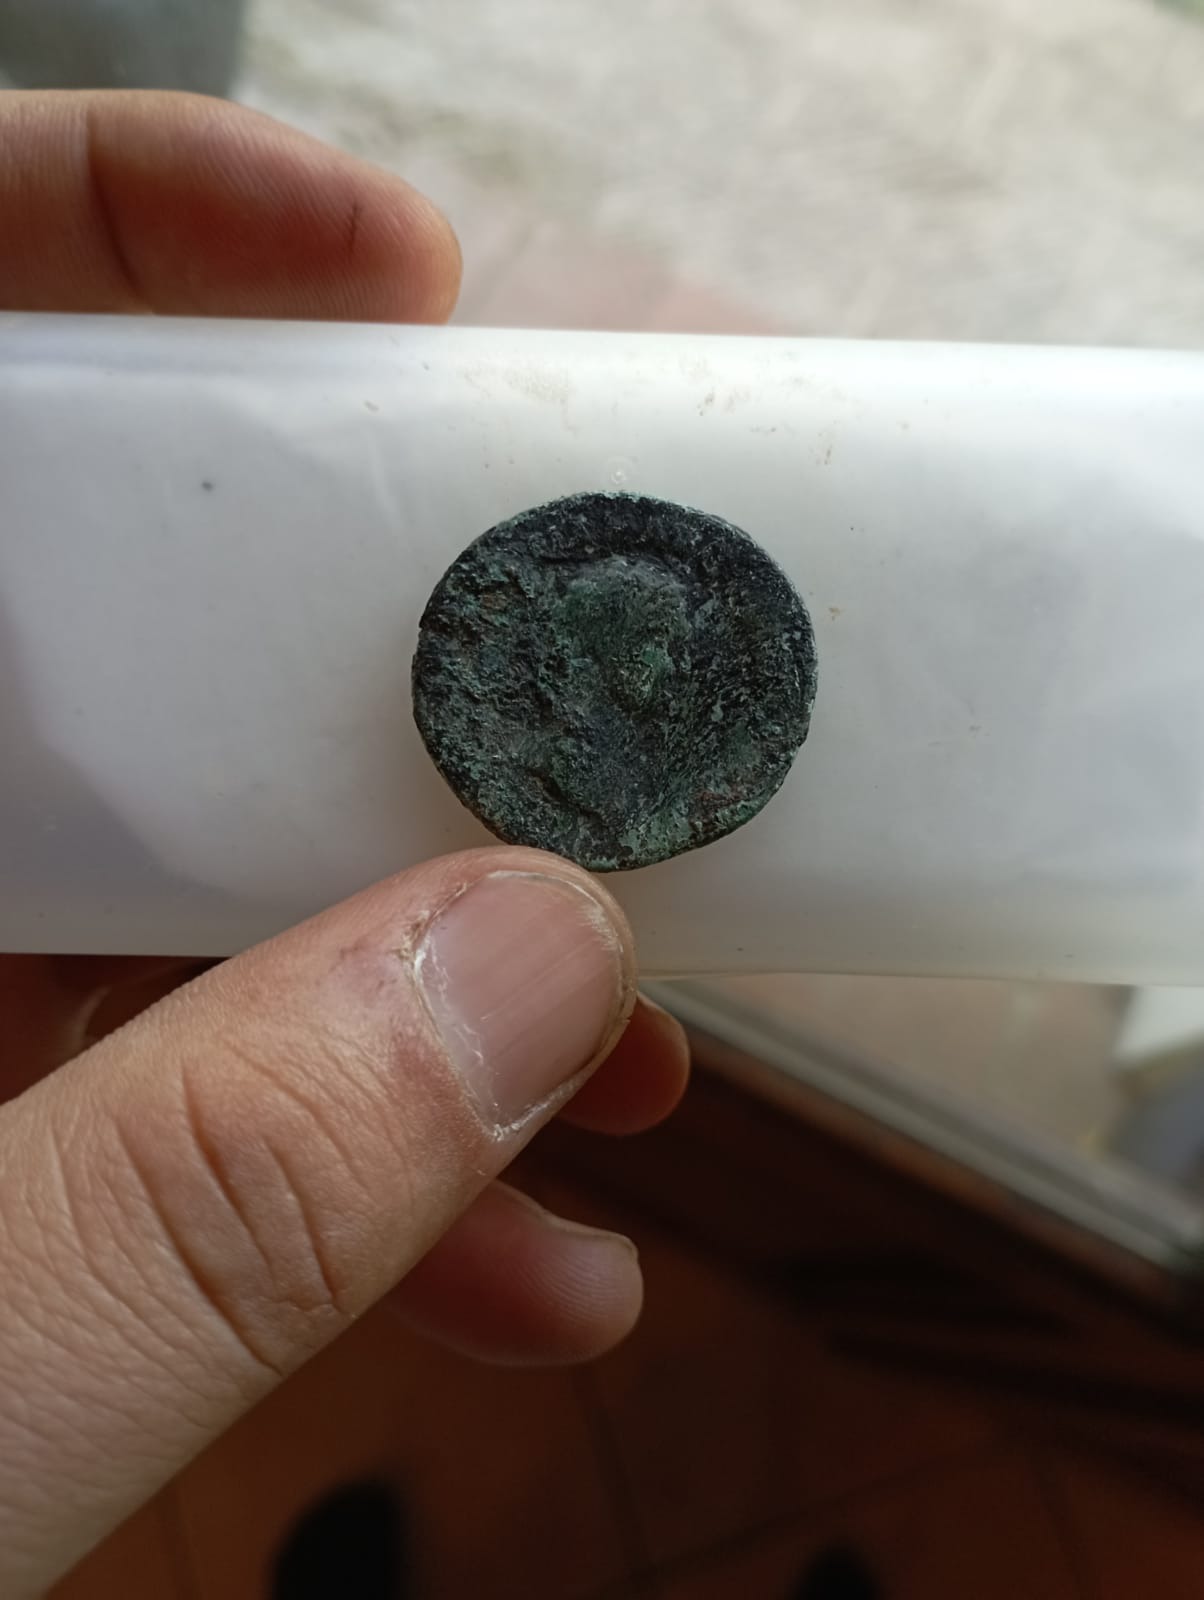 Moneta Romana